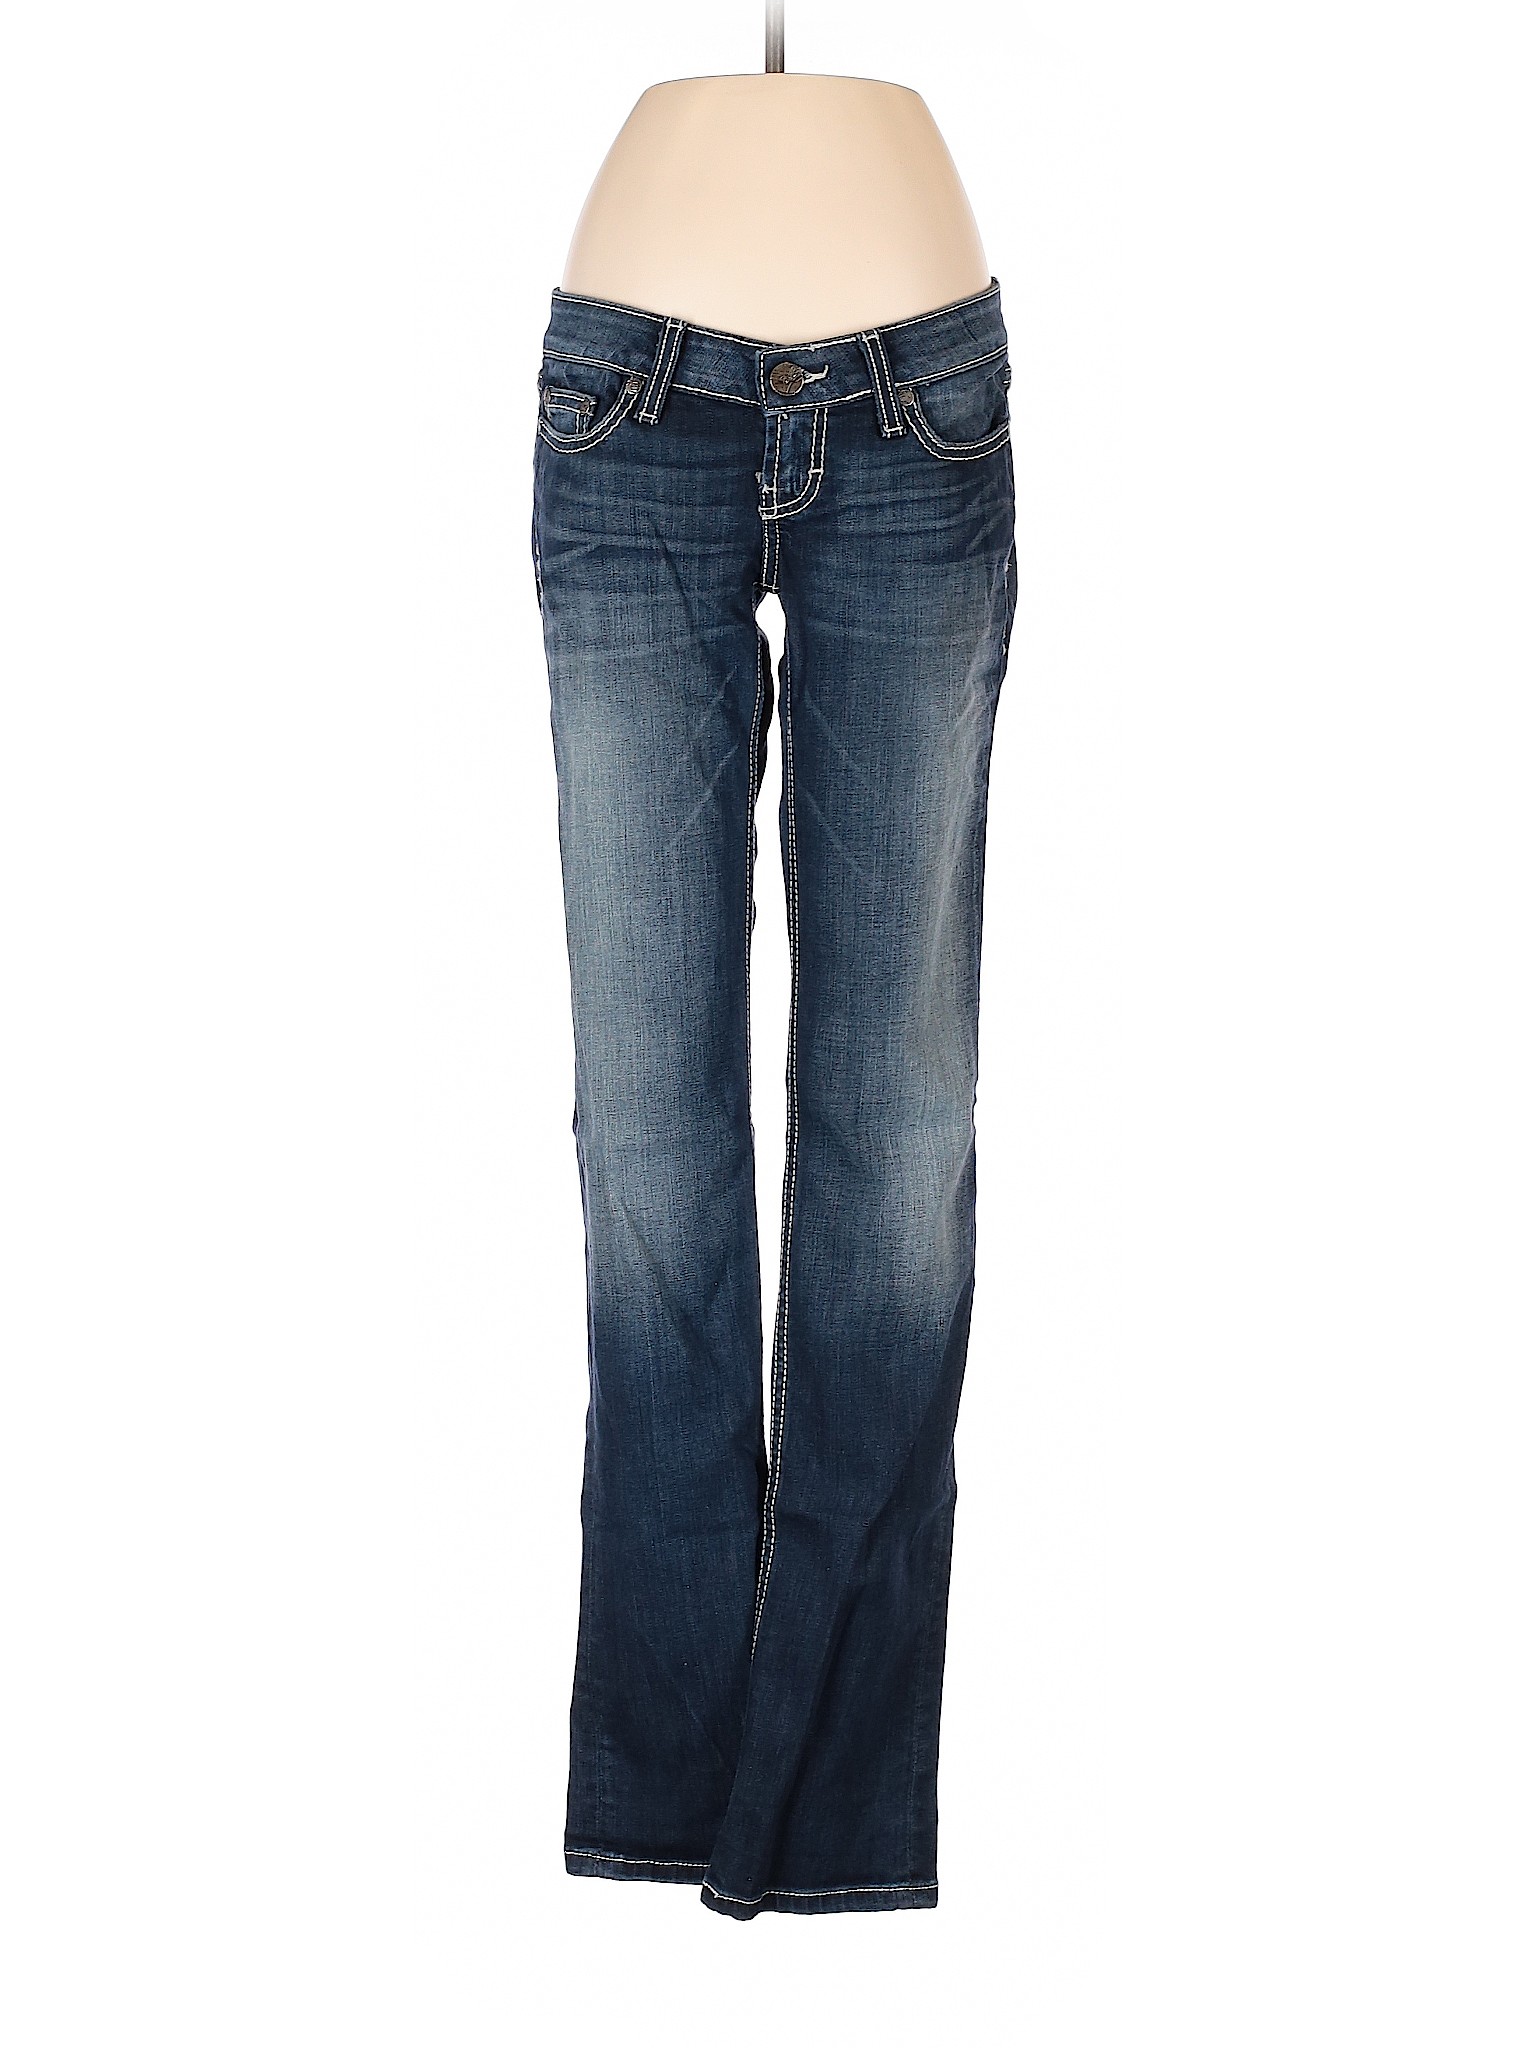 BKE Women Blue Jeans 25W | eBay